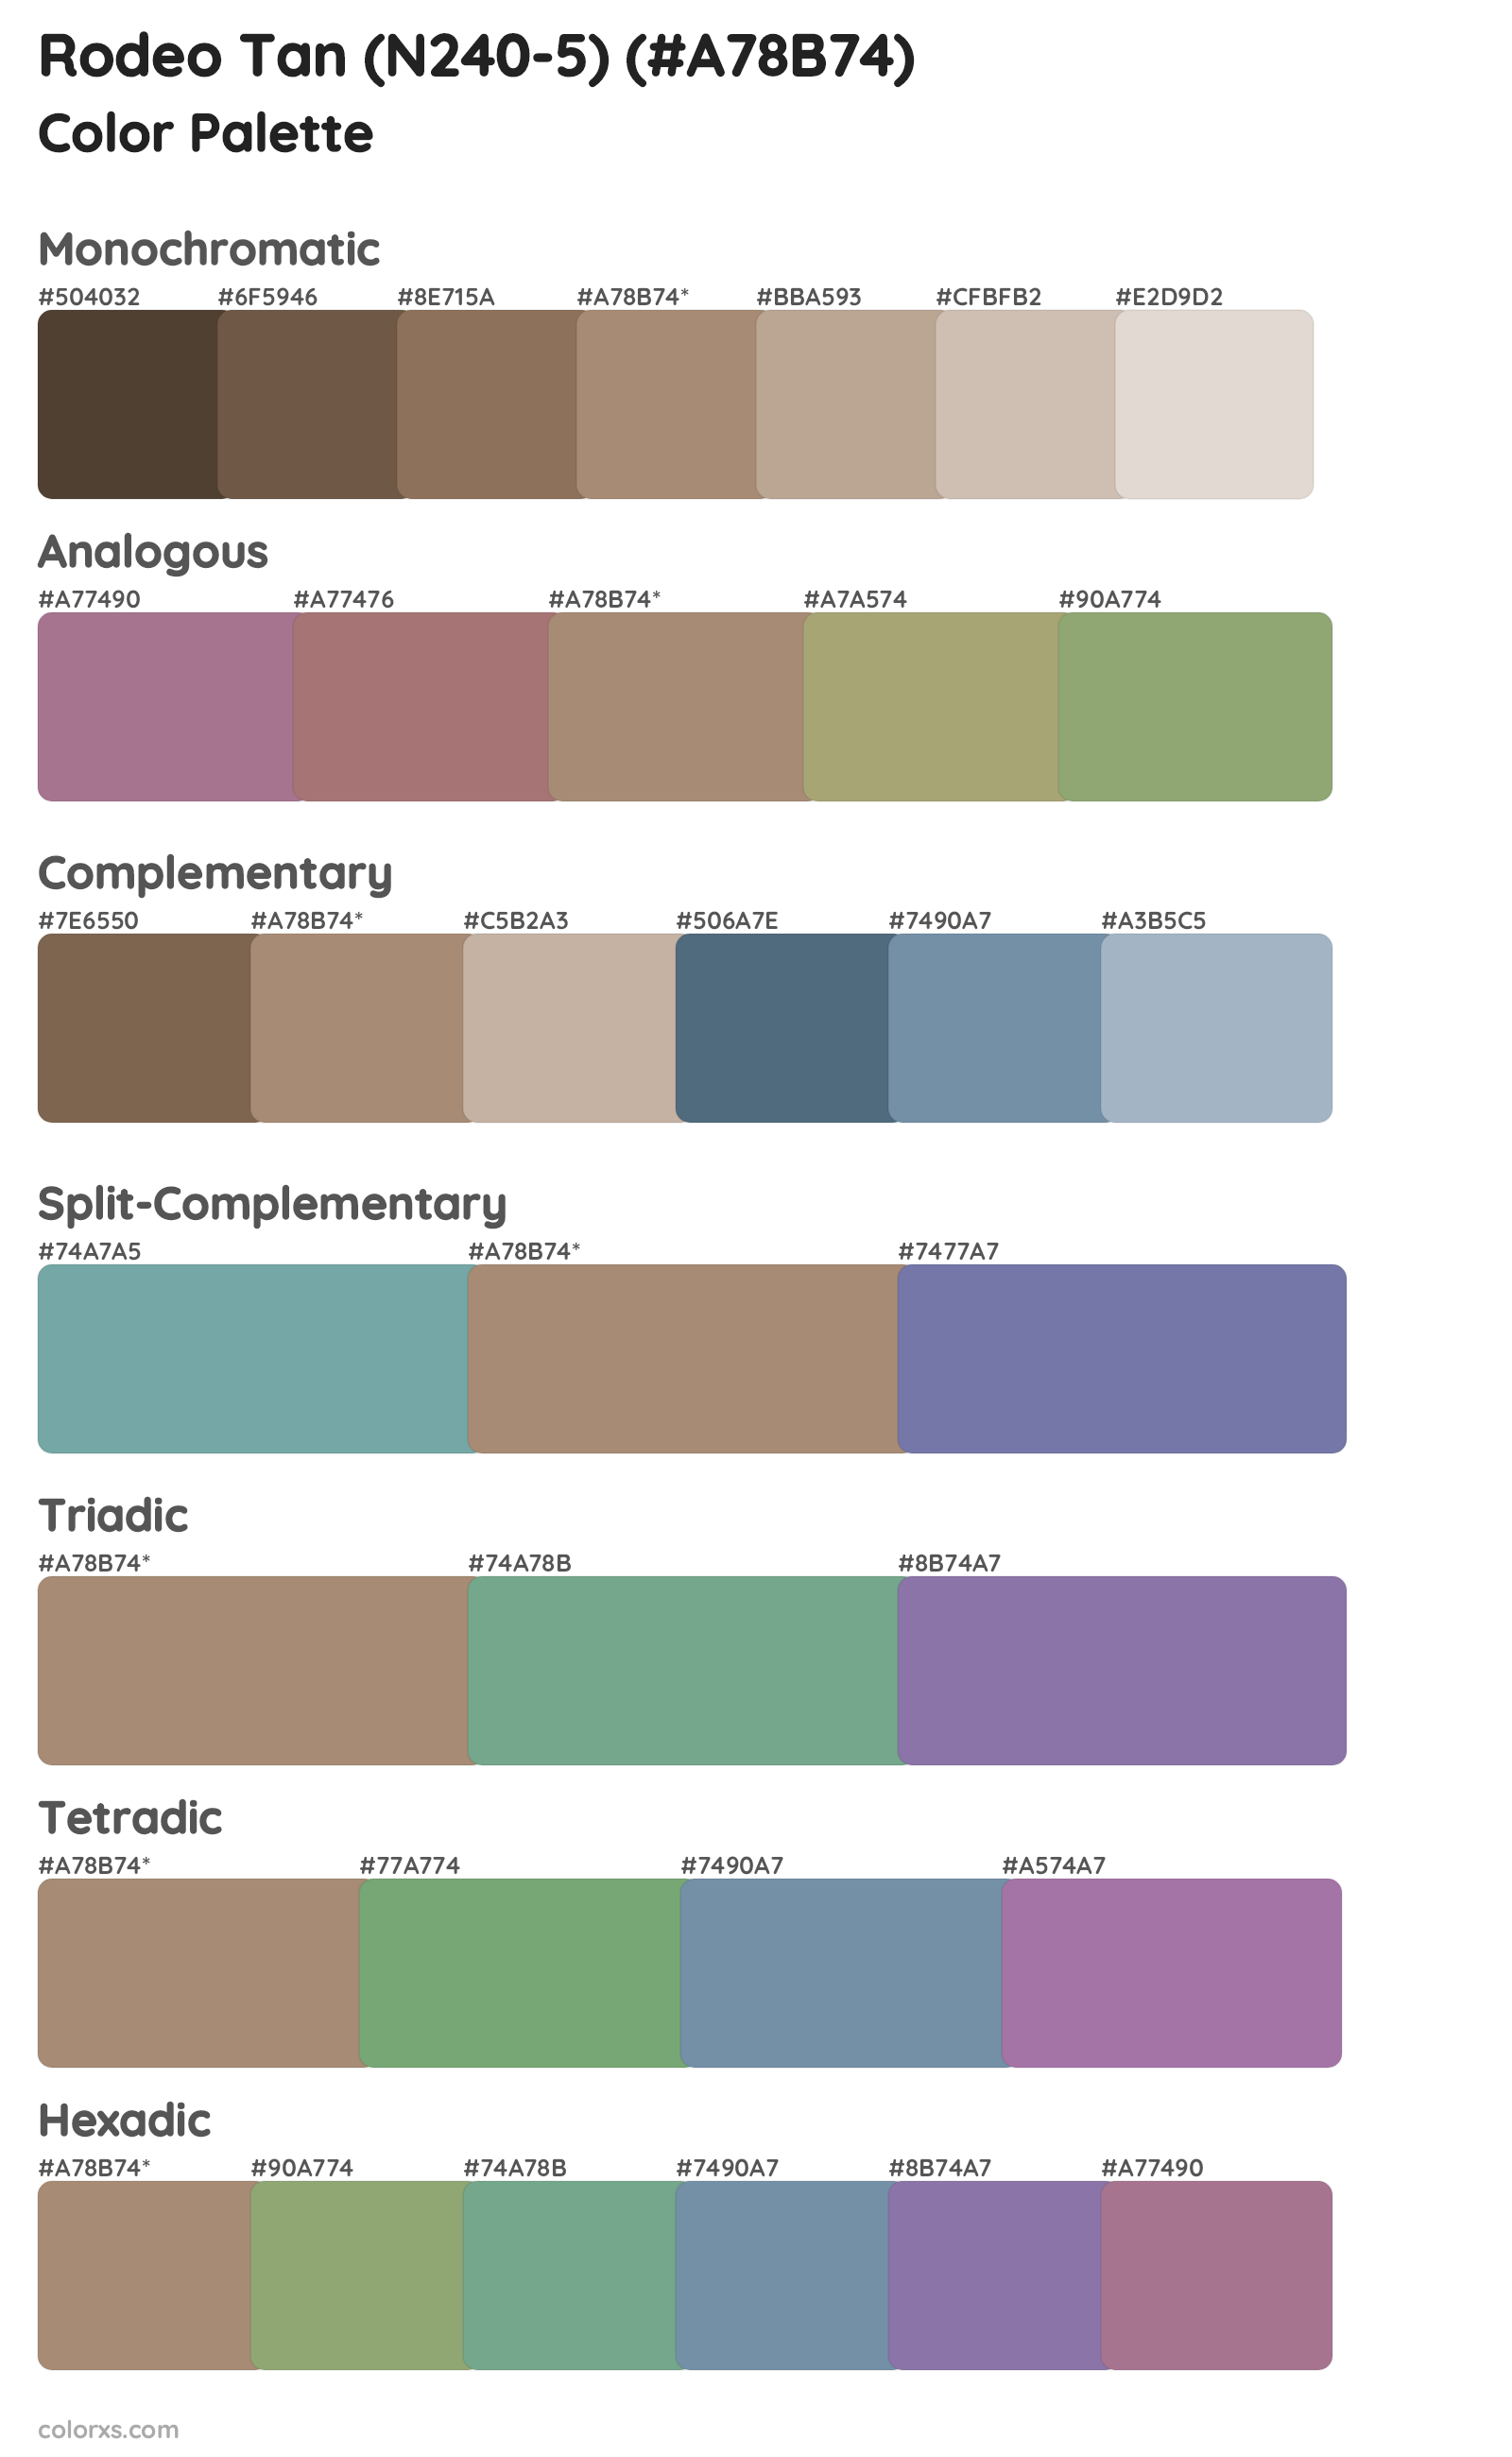 Rodeo Tan (N240-5) Color Scheme Palettes